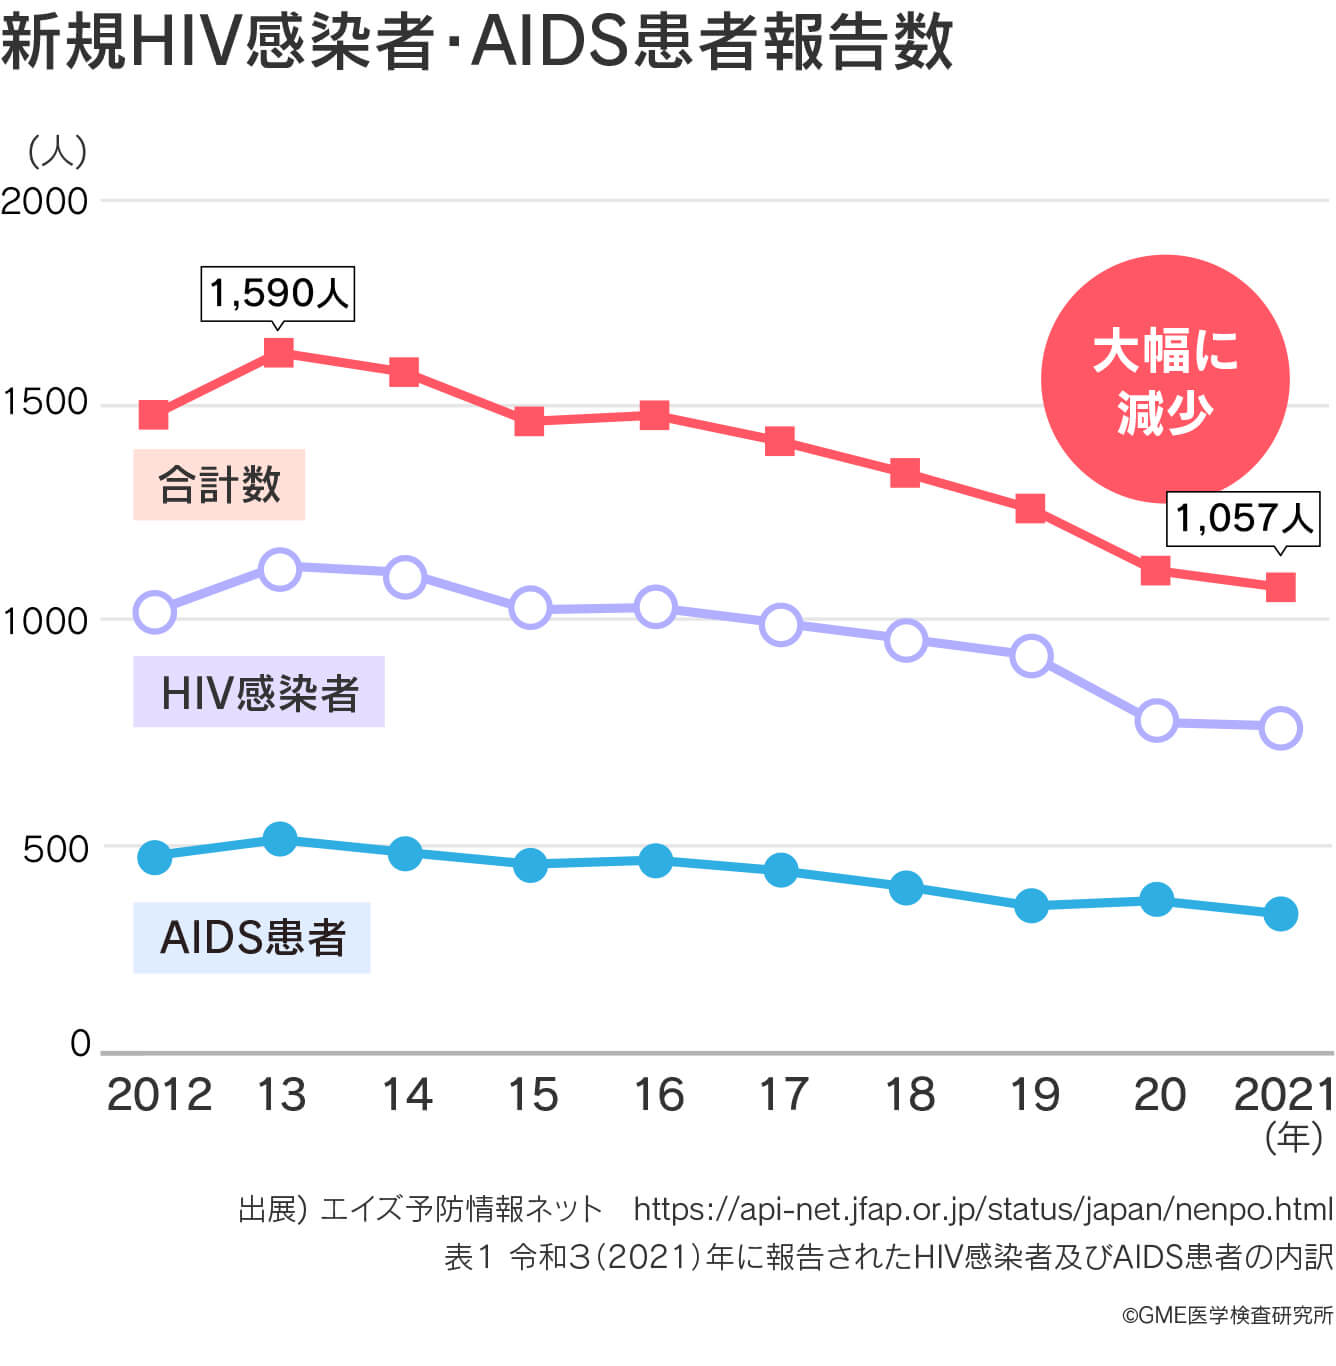 新規HIV感染者・AIDS患者報告数は新型コロナウイルスによる検査控えに伴い減少